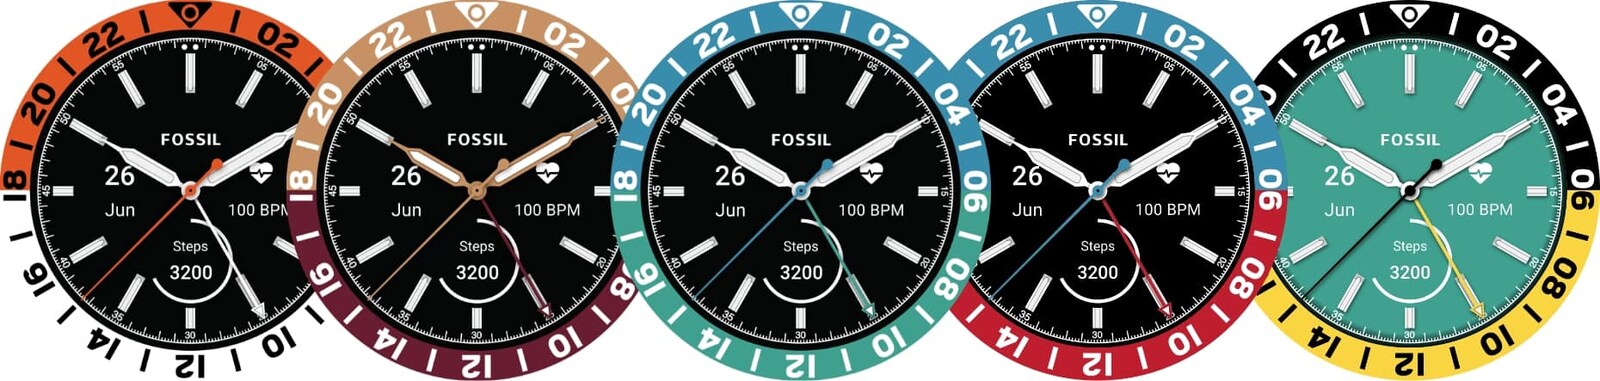 Une sélection de cadrans de montre Heritage GMT Fossil, présentant les différentes options de personnalisation.